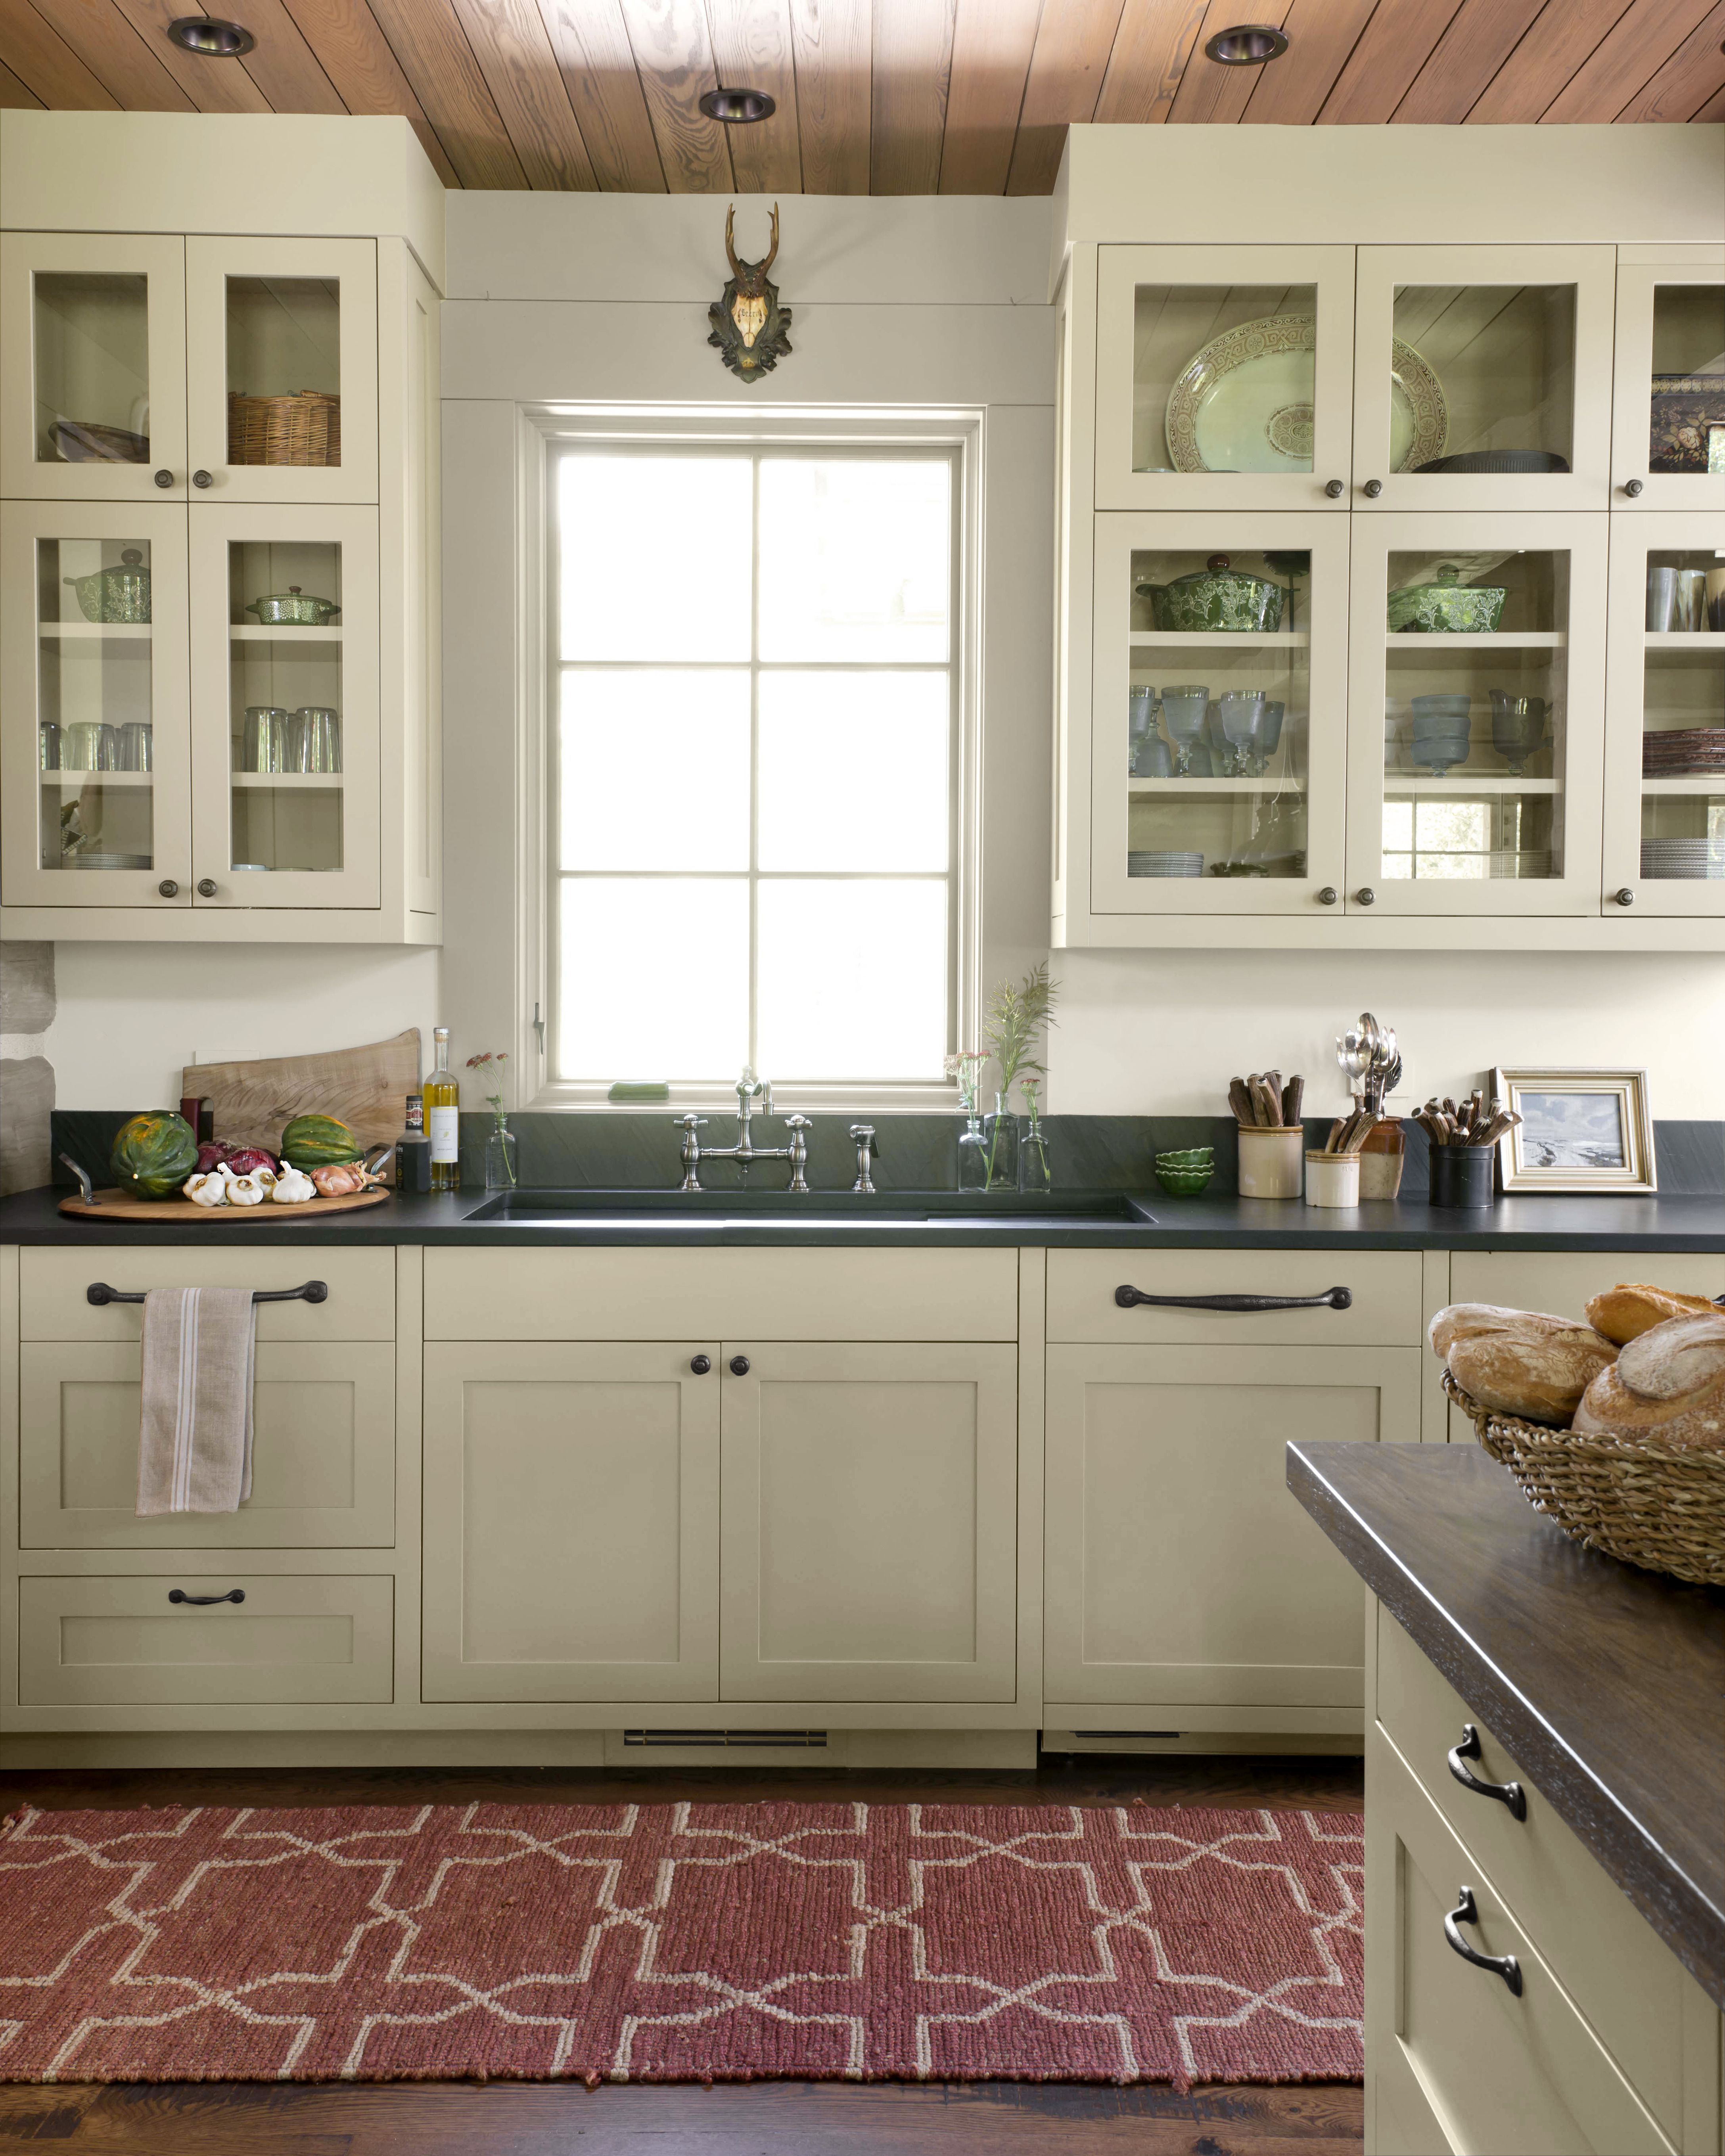 Elegant kitchen colors images 31 Kitchen Color Ideas Best Paint Schemes